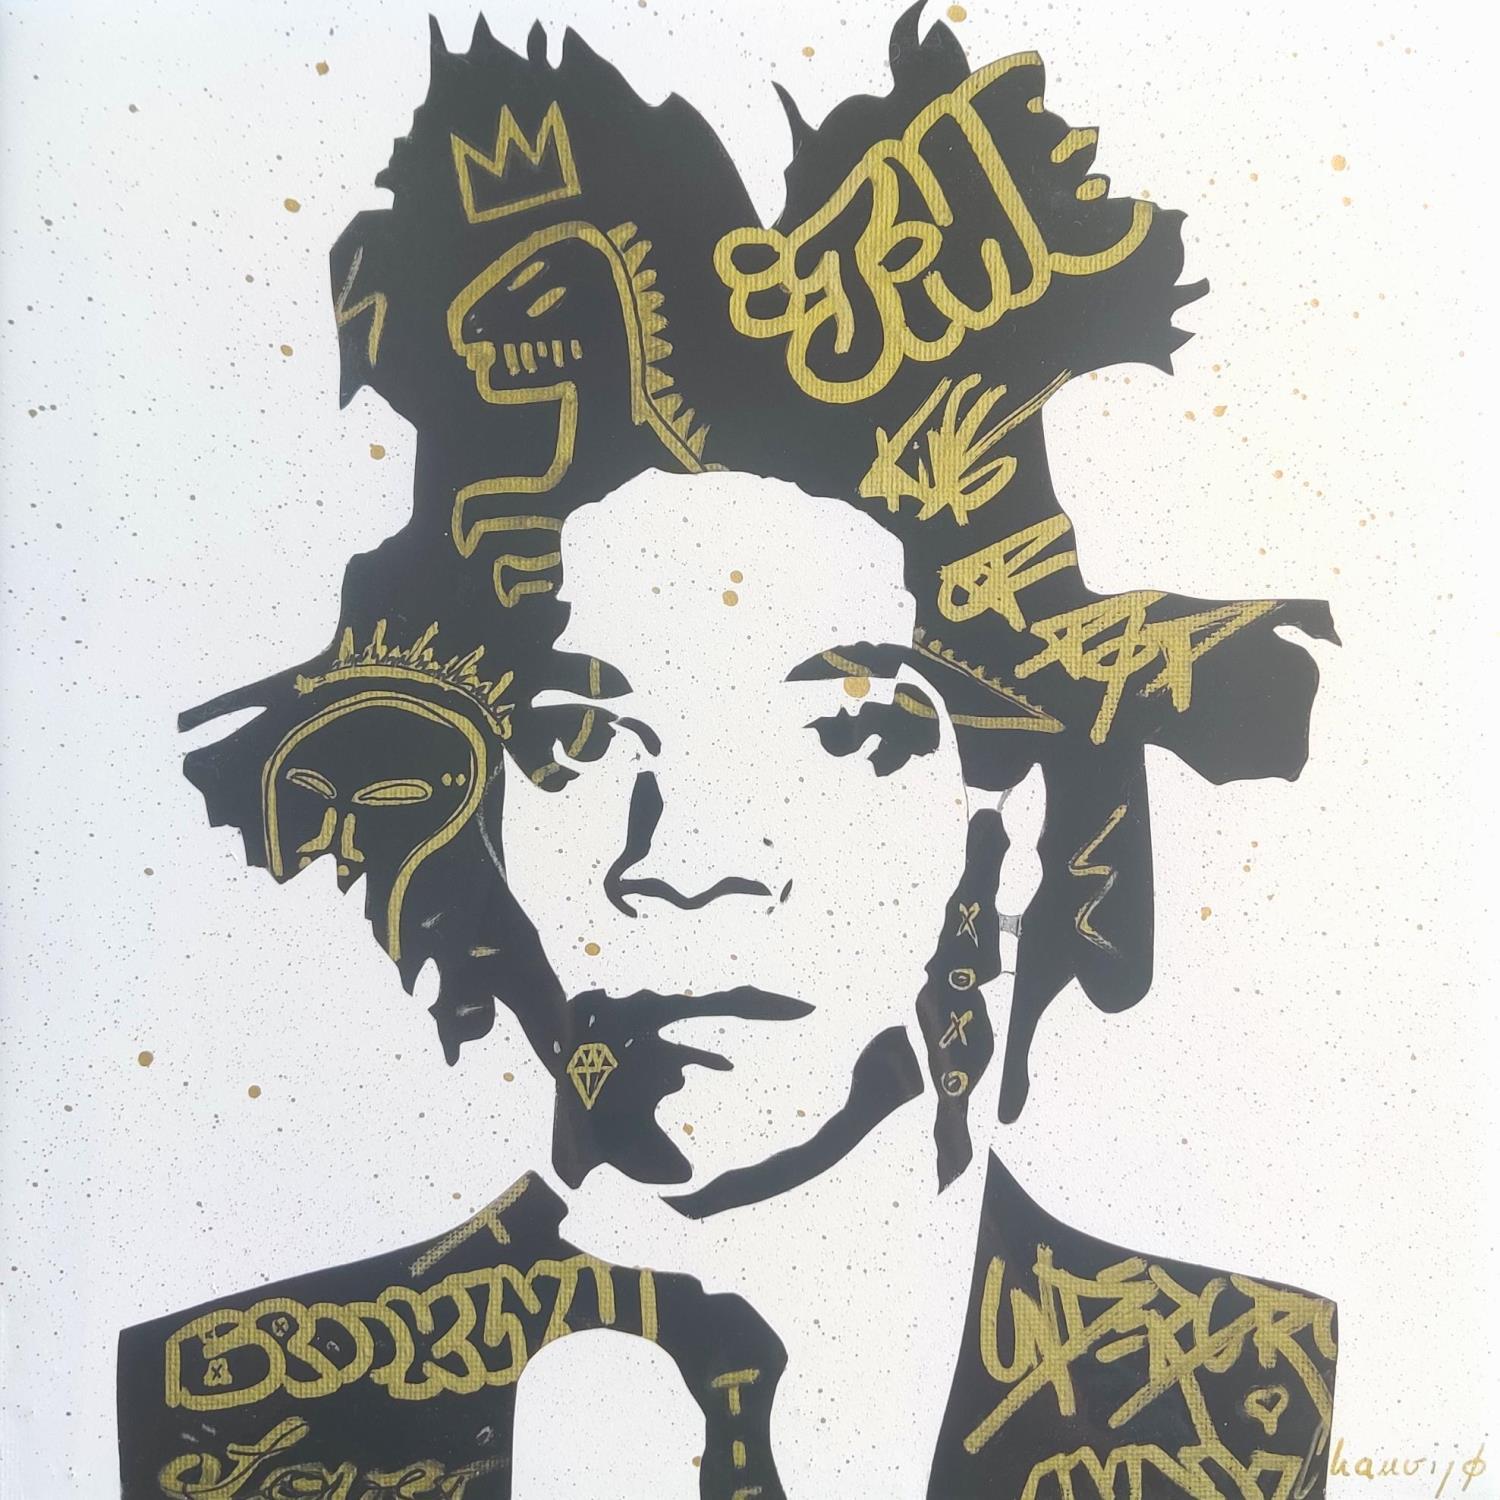 jean michel basquiat artwork - street art pop art artist